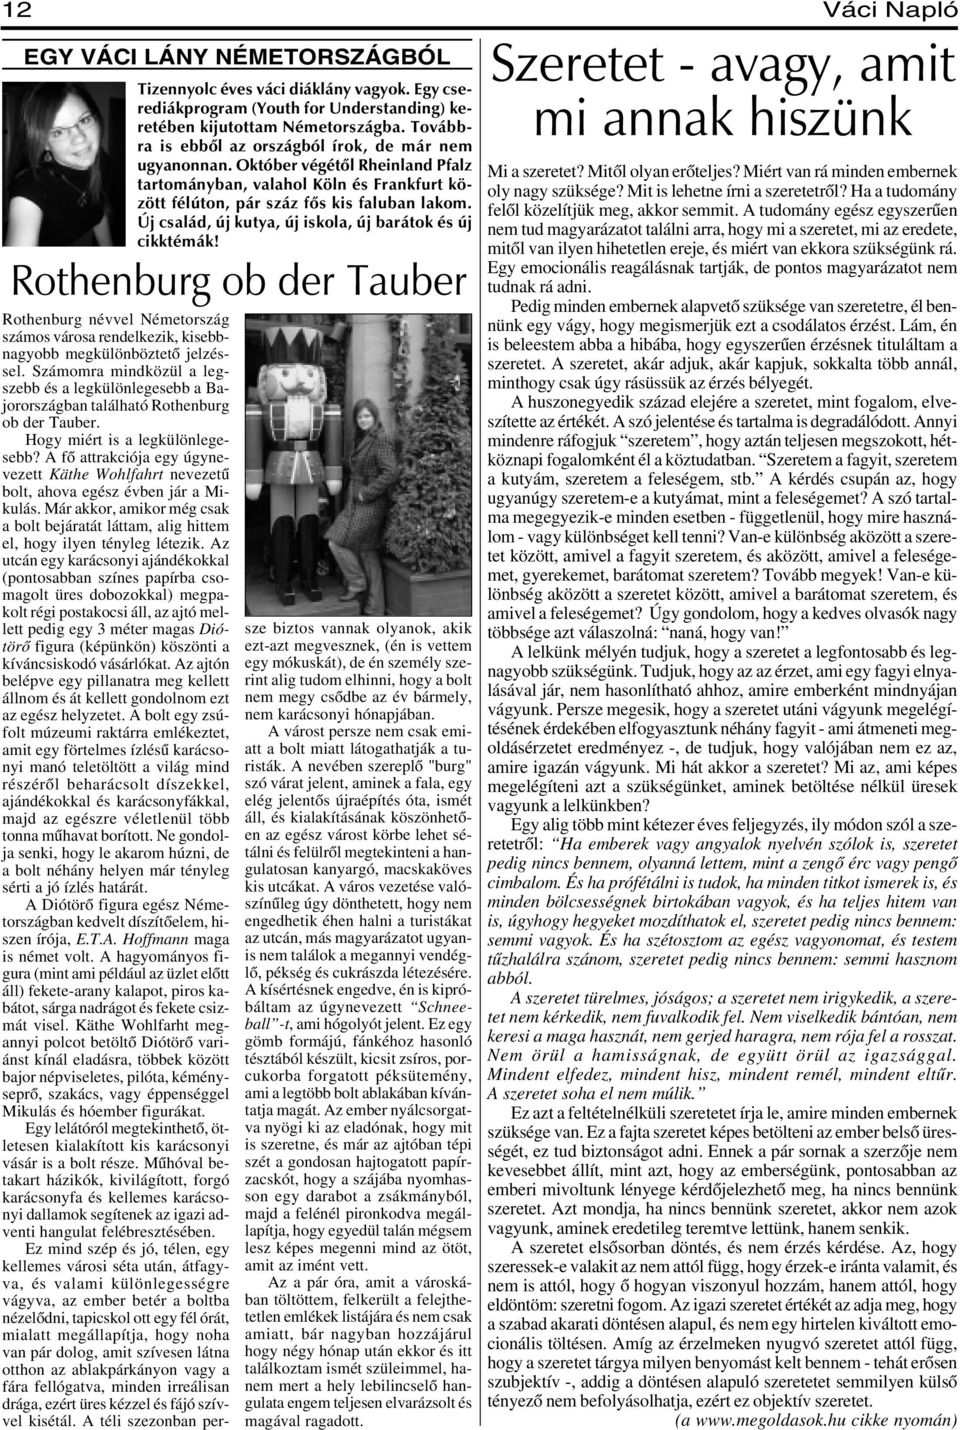 Új család, új kutya, új iskola, új barátok és új cikktémák! Rothenburg ob der Tauber Rothenburg névvel Németország számos városa rendelkezik, kisebbnagyobb megkülönböztetõ jelzéssel.